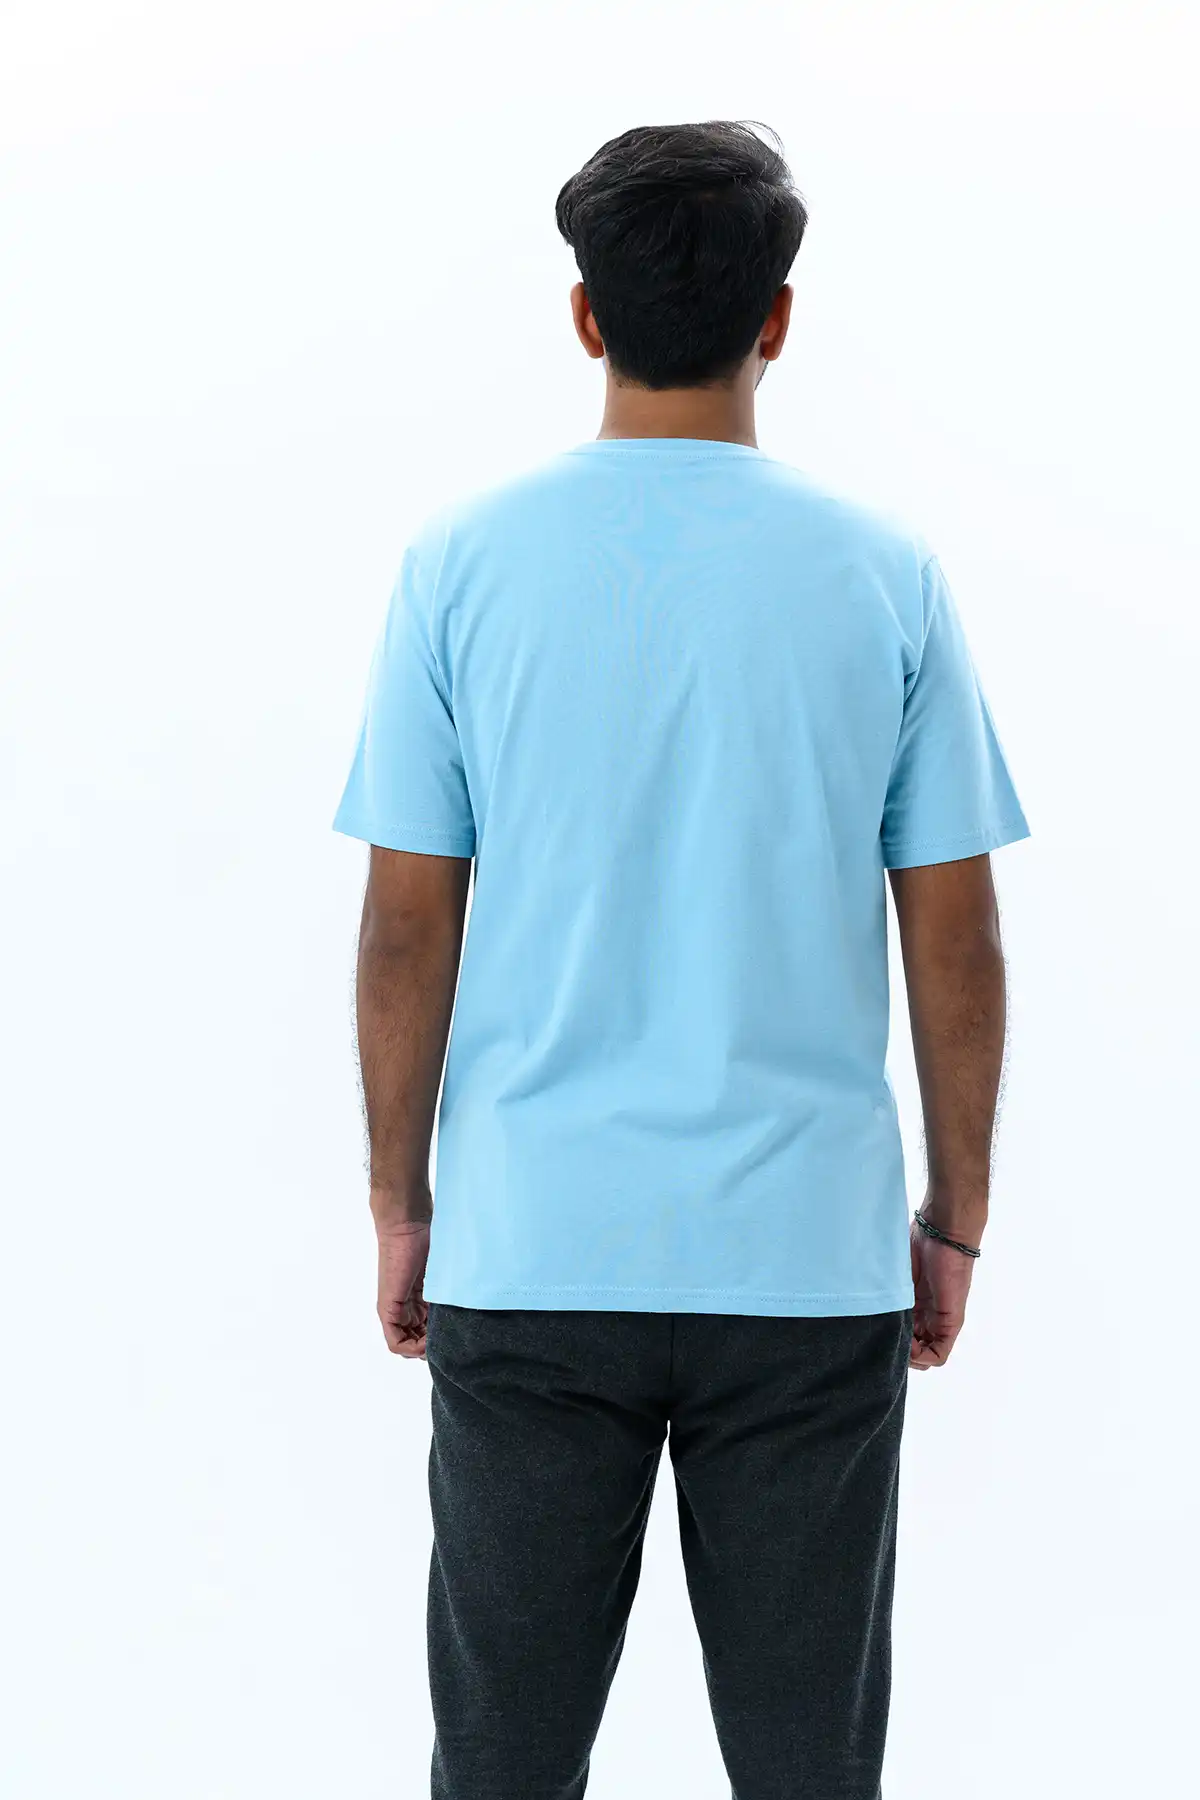 Unisex Crew Neck Cotton T-Shirt - Sky Blue